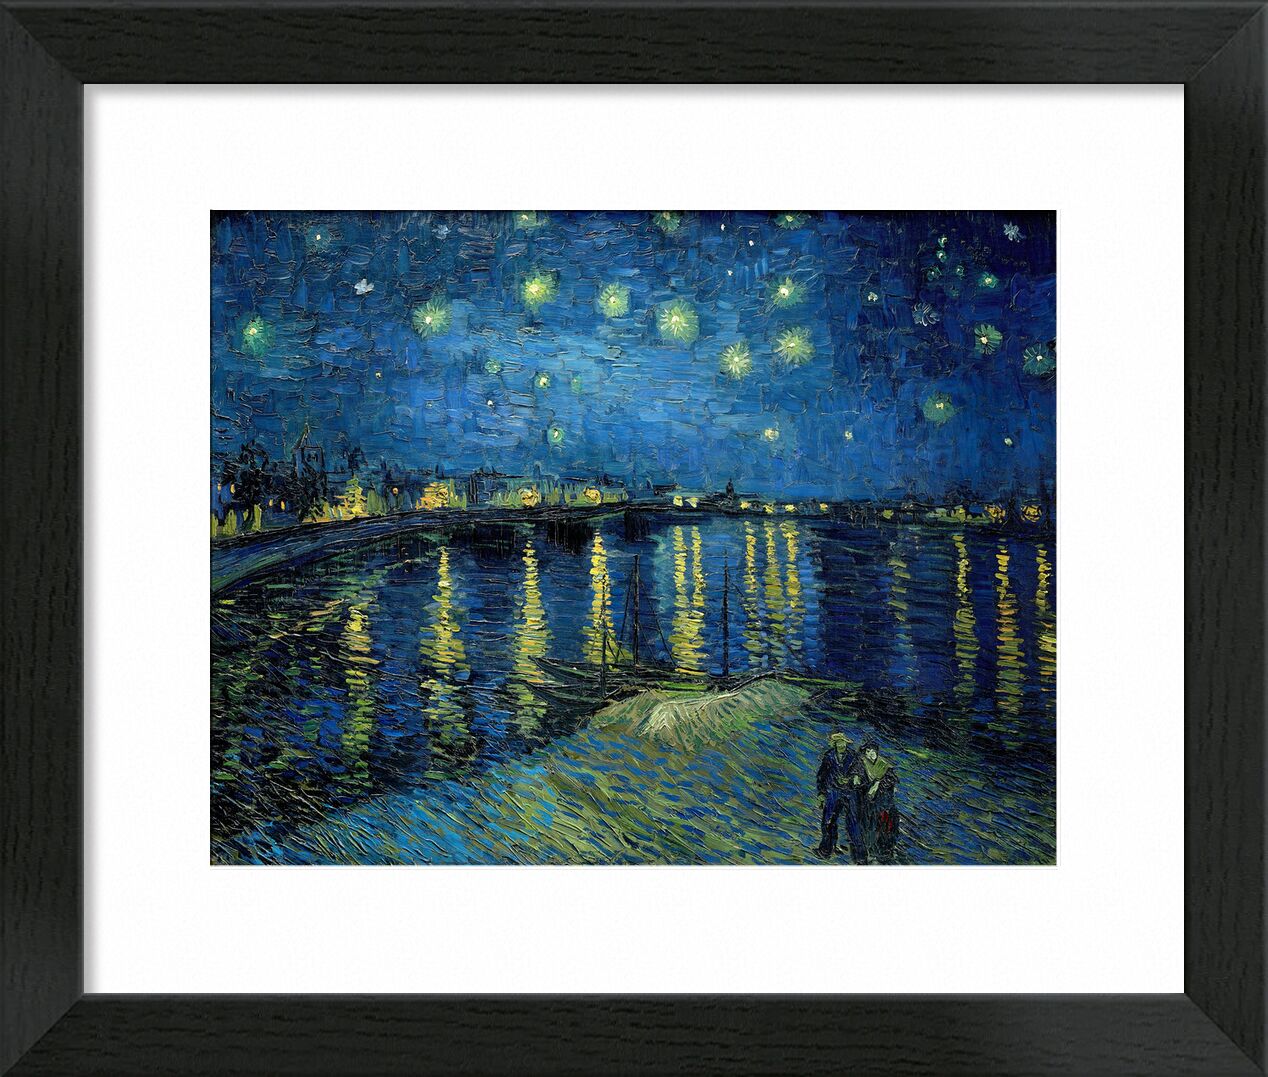 Starry Night Over the Rhone - Van Gogh von Bildende Kunst, Prodi Art, Sterne, Beleuchtung, Paar, Wasser, Boote, halo, Himmel, Mond, Van gogh, Nacht, Hafen, Stadt